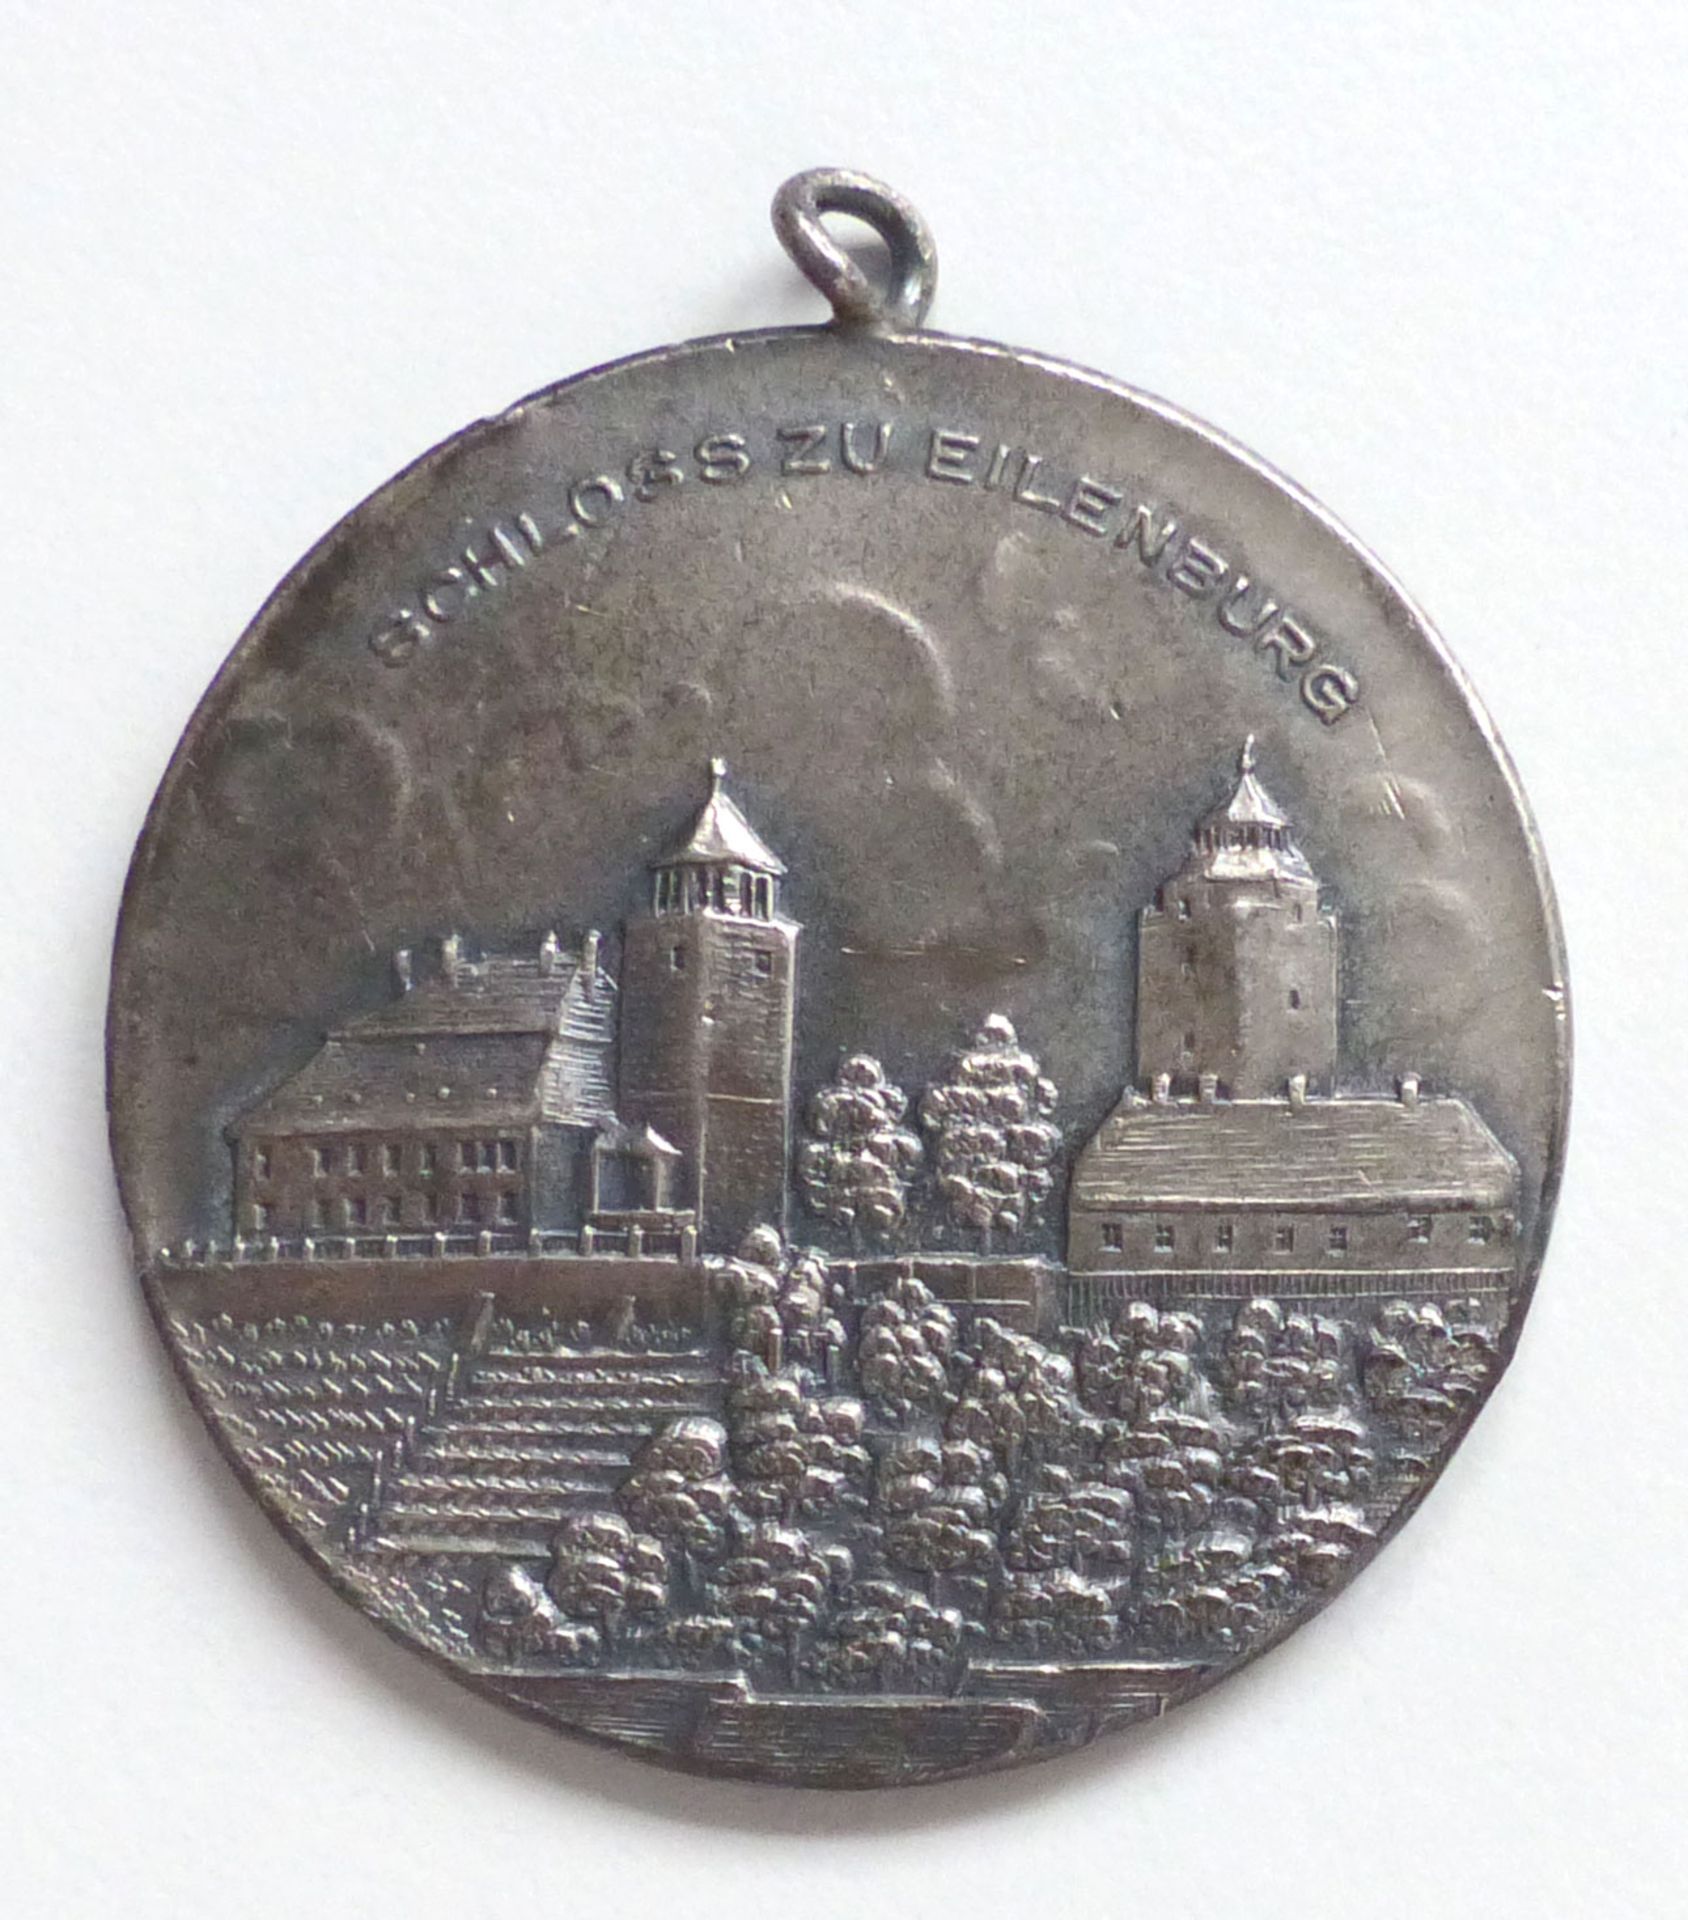 Schützen Eilenburg Bundesschiessen 1931 Medaille silber 40 mm Durchmesser I-II